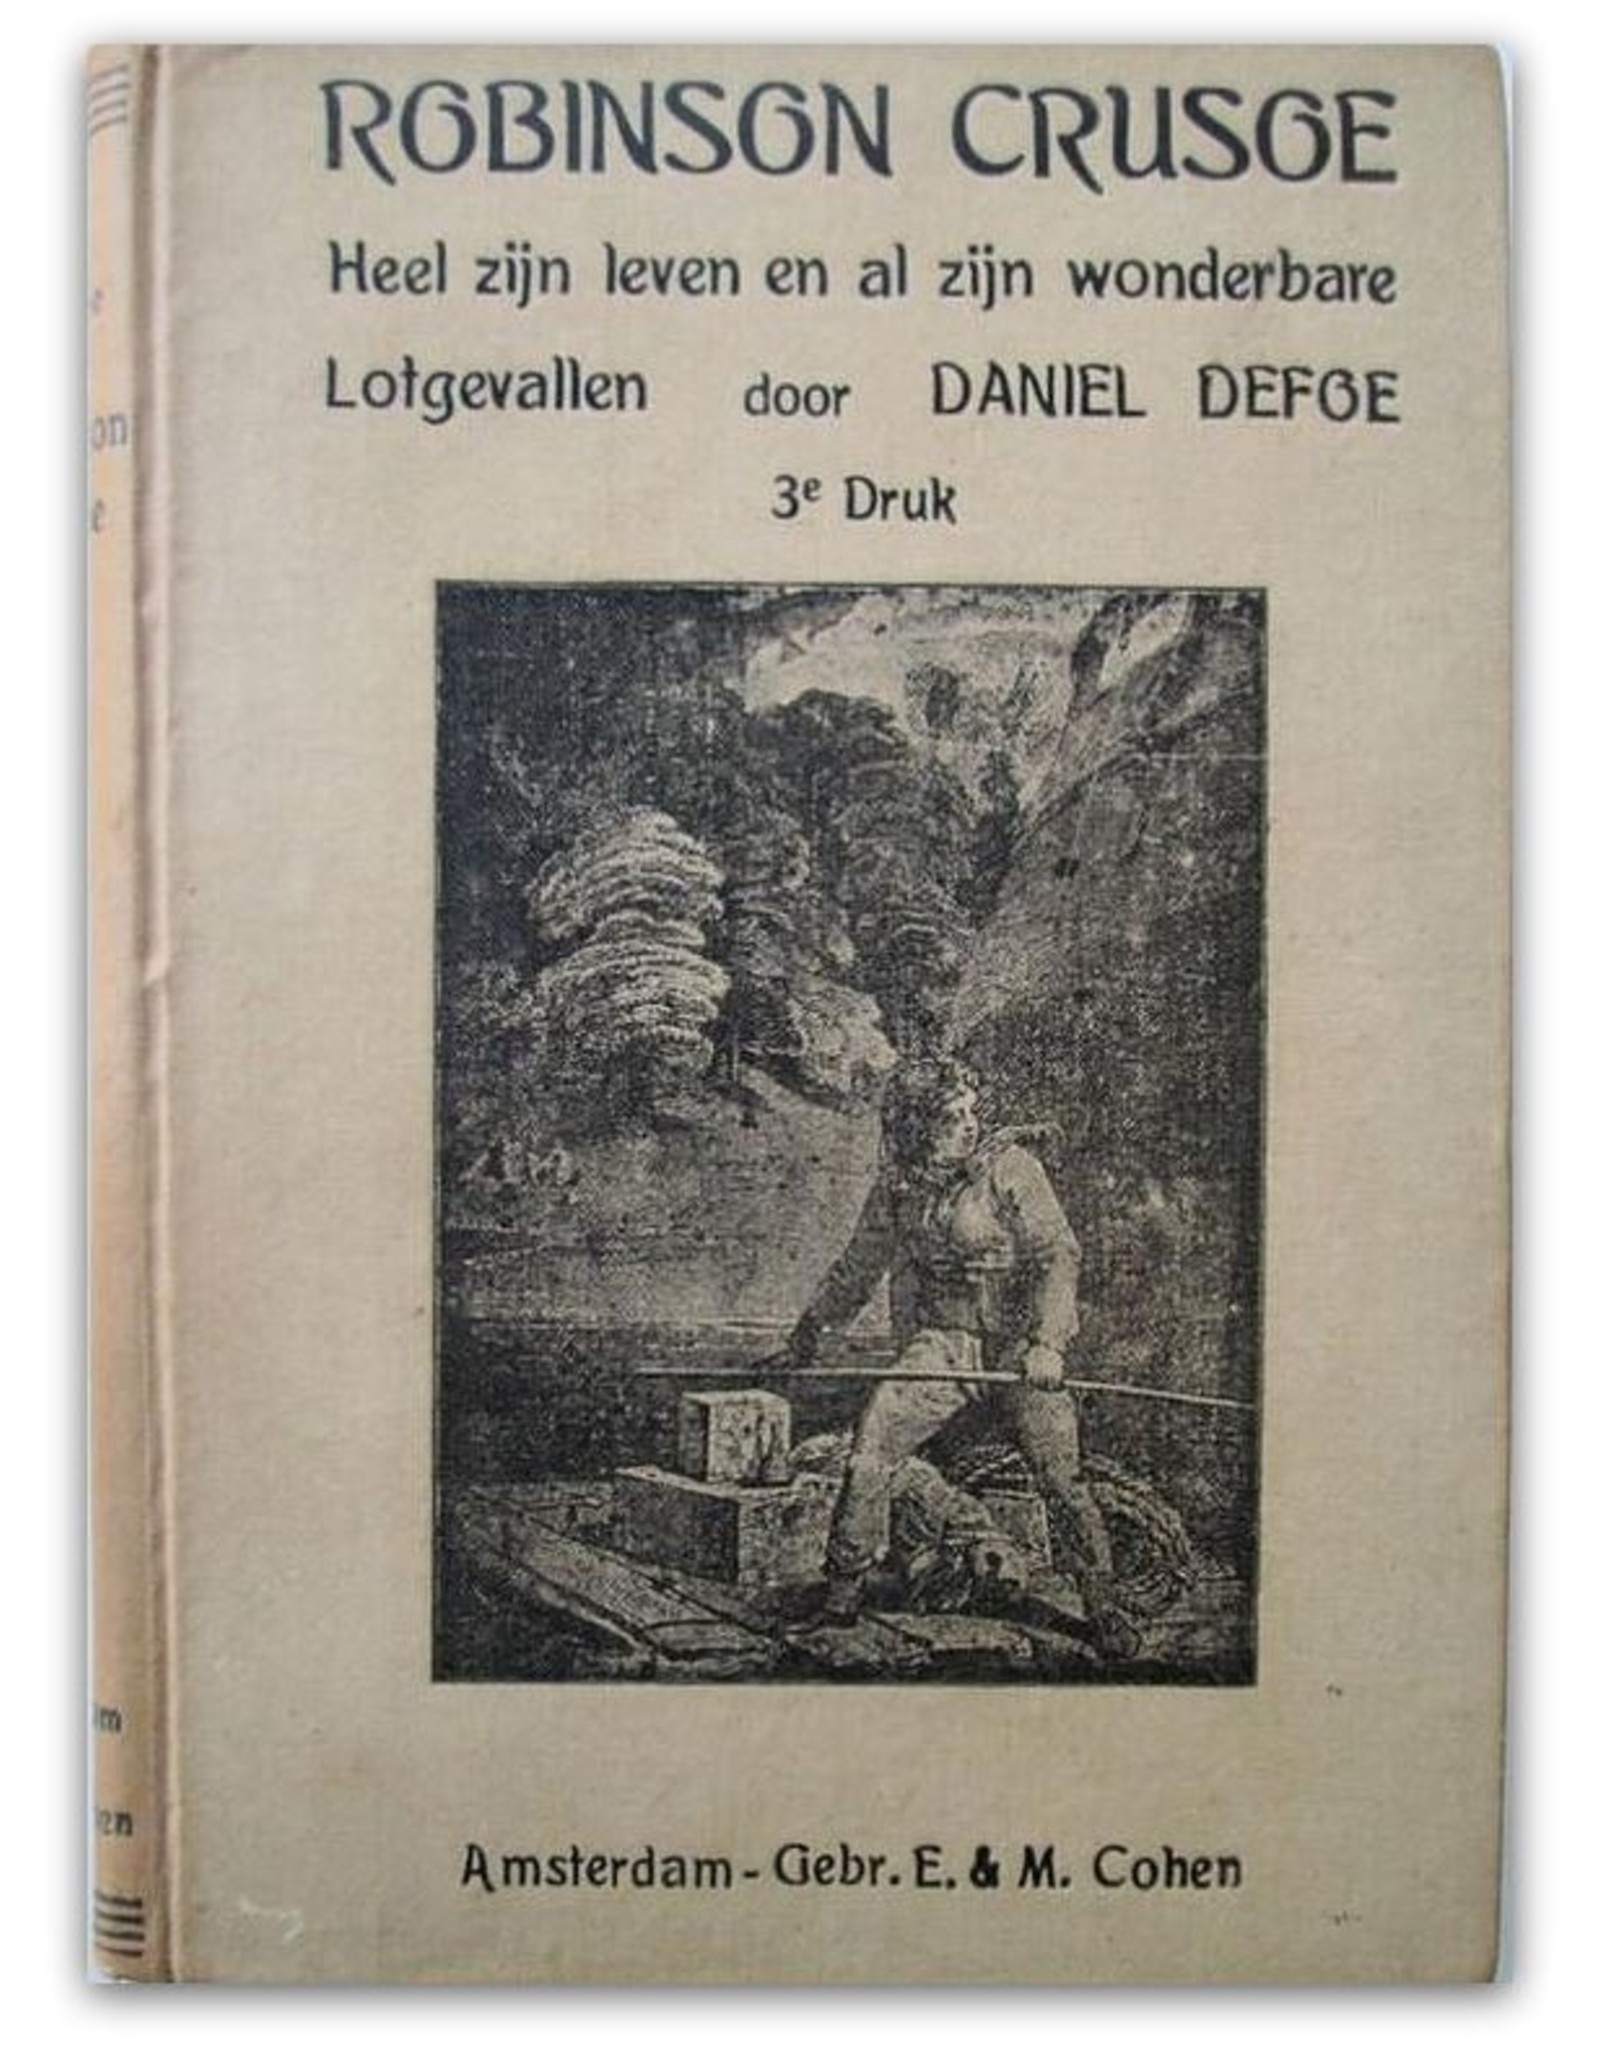 Daniel Defoe - Het leven en de vreemde wonderbare lotgevallen van Robinson Crusoe, een zeeman van York. Door hemzelven verteld. + WW2 advertising folder for Arnhem bookstore